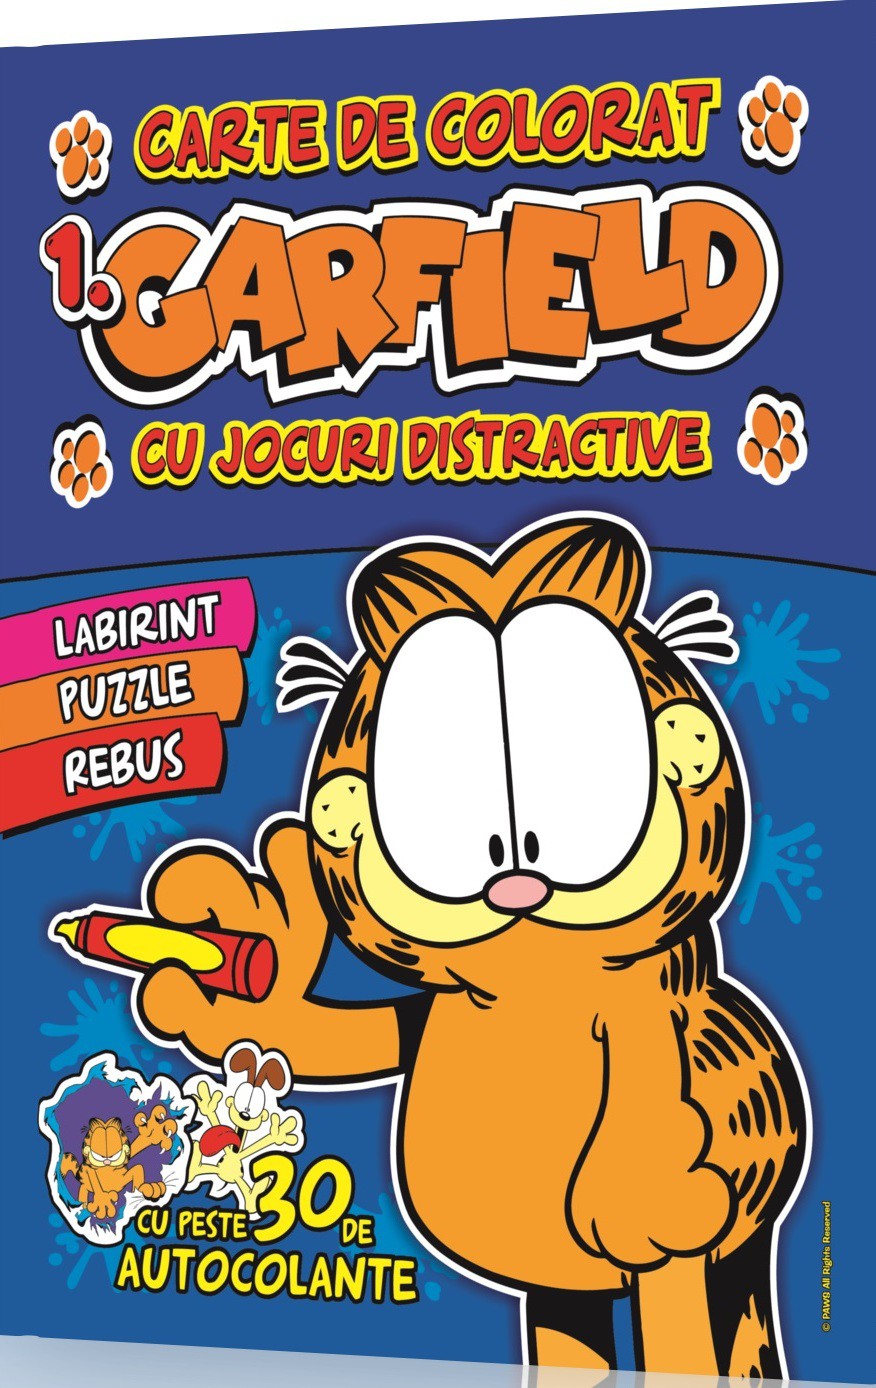 Garfield vol.1: Carte de colorat cu jocuri distractive